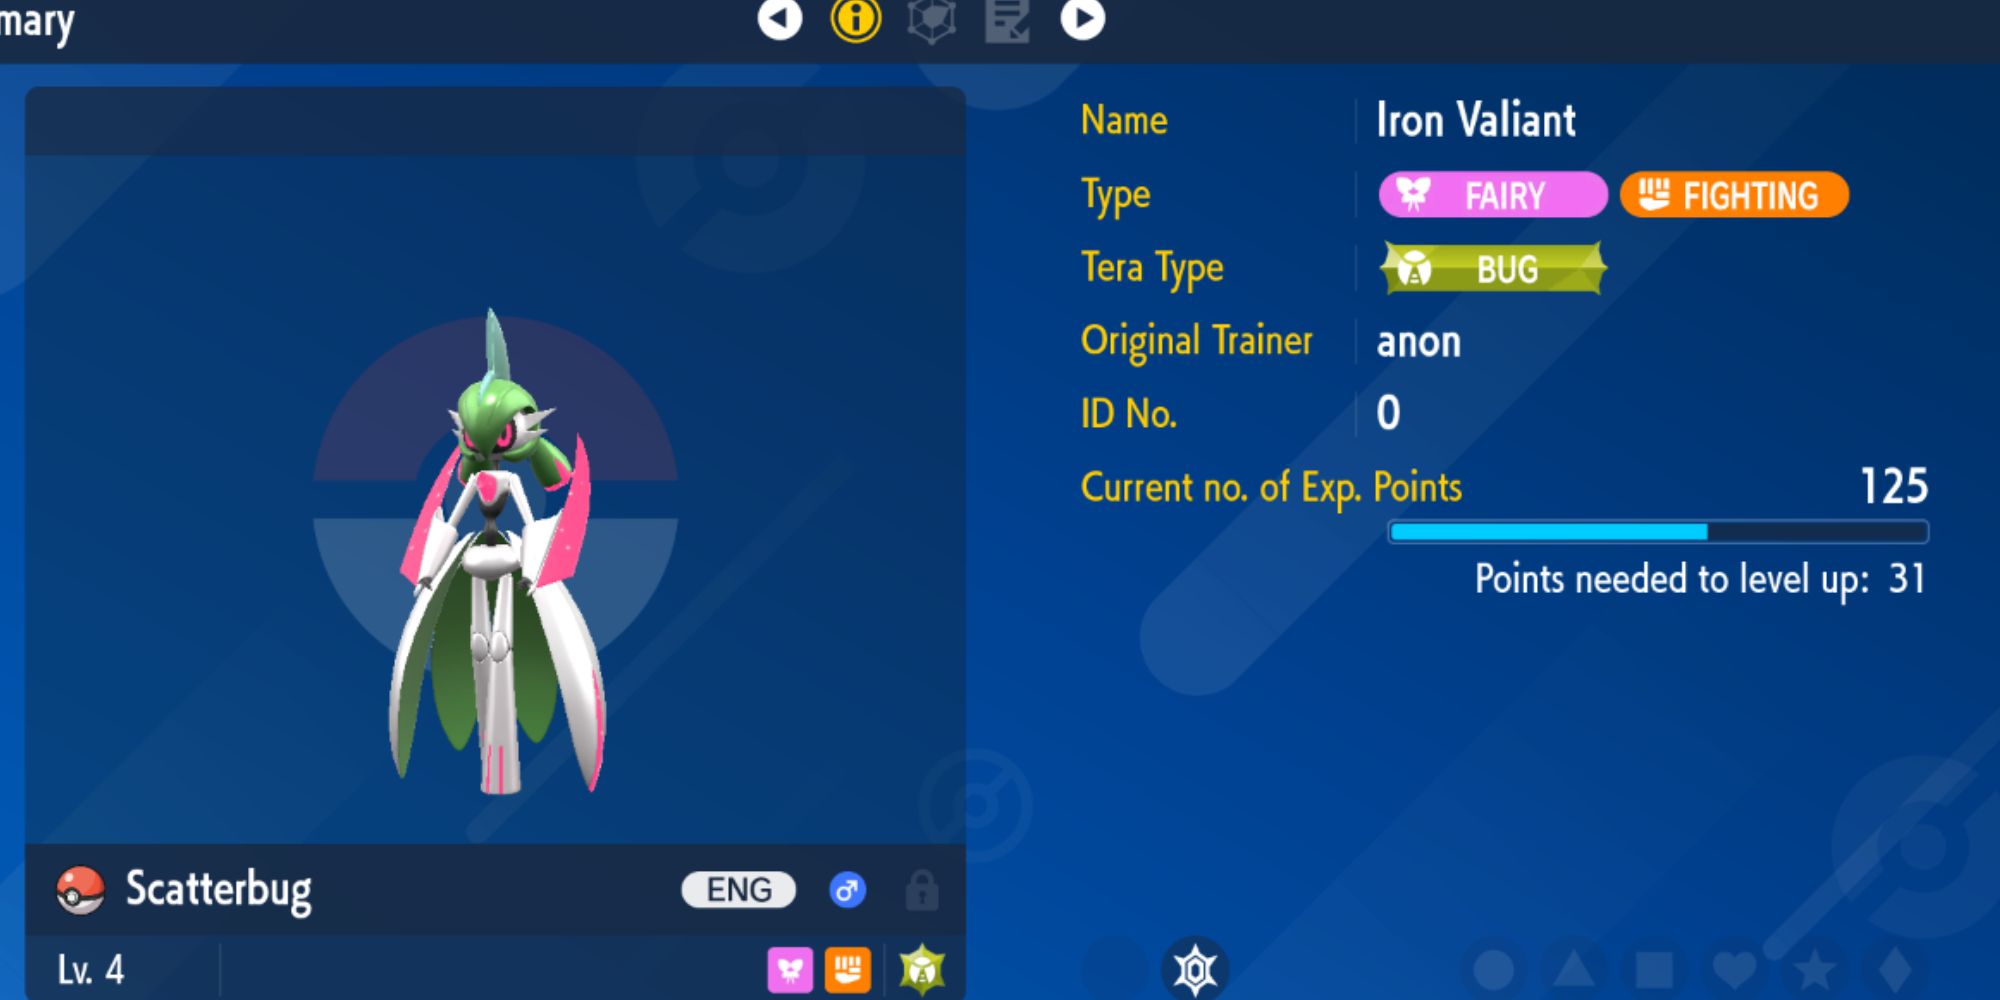 The Pokedex entry for new Pokémon Iron Valiant. 